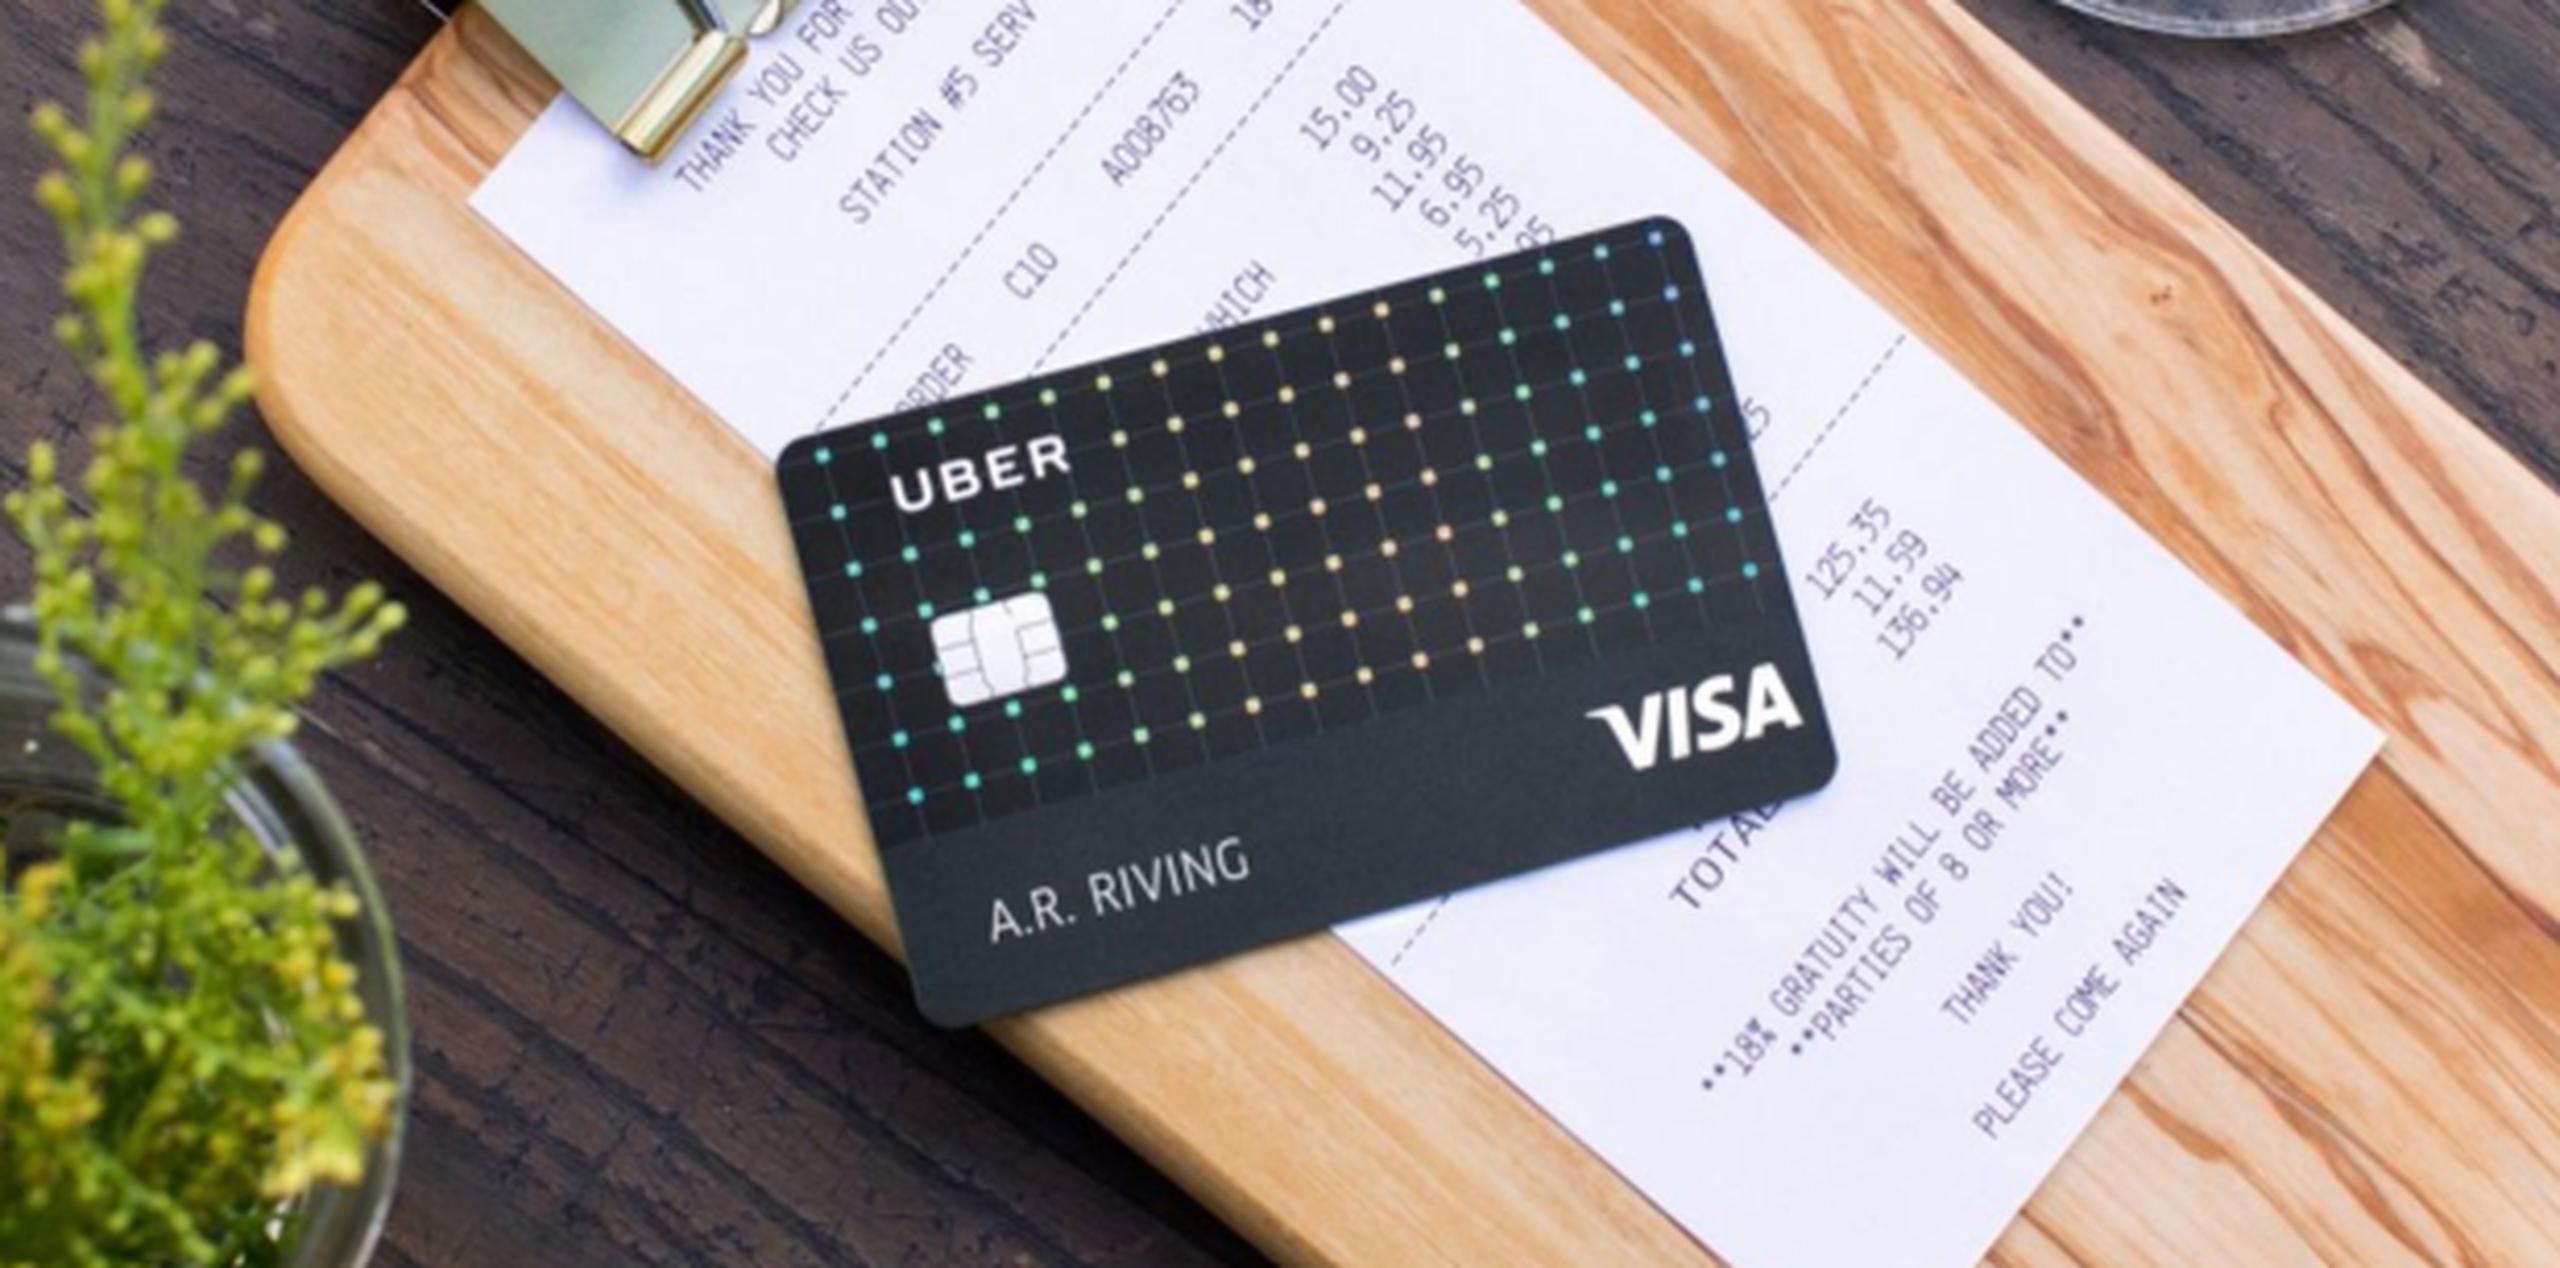 Uber Visa no cobrará honorarios adicionales por su uso fuera de Estados Unidos y no tendrá una anualidad. (Uber)